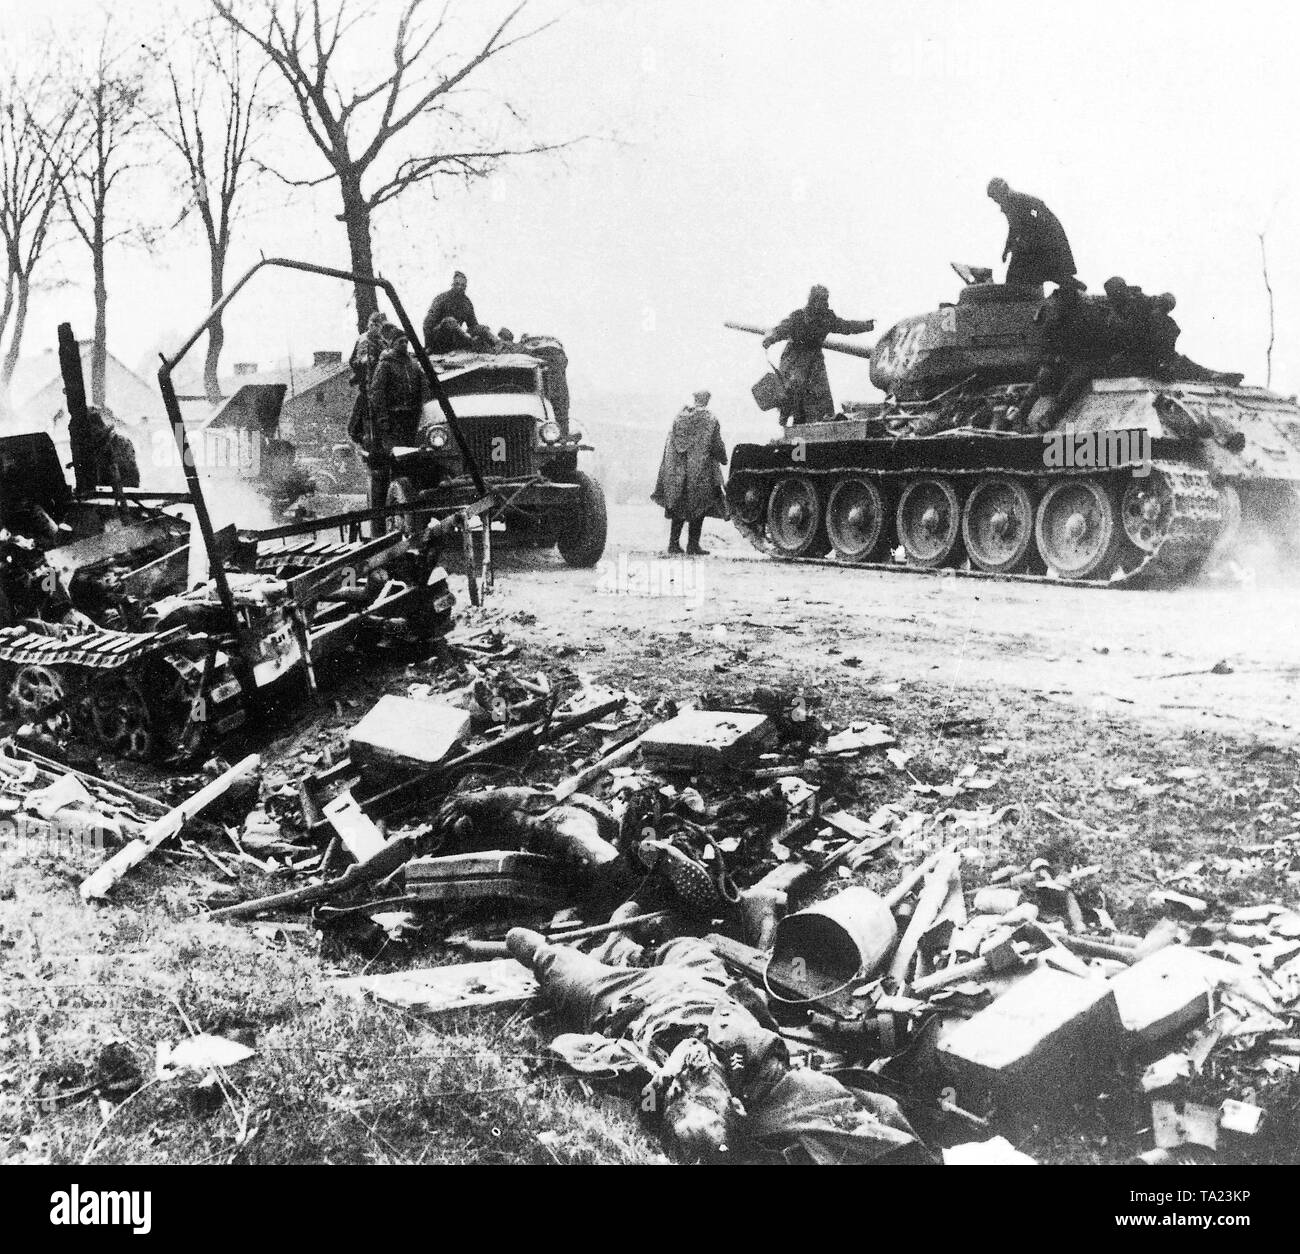 Réservoir T-34 russe à Berlin. Seconde Guerre mondiale, la bataille de Berlin en 1945. L&amp;#39;anneau défensif autour de la capitale impériale s&amp;#39;est effondrée. Les chars de l&amp;#39;Armée rouge avance vers la ville,